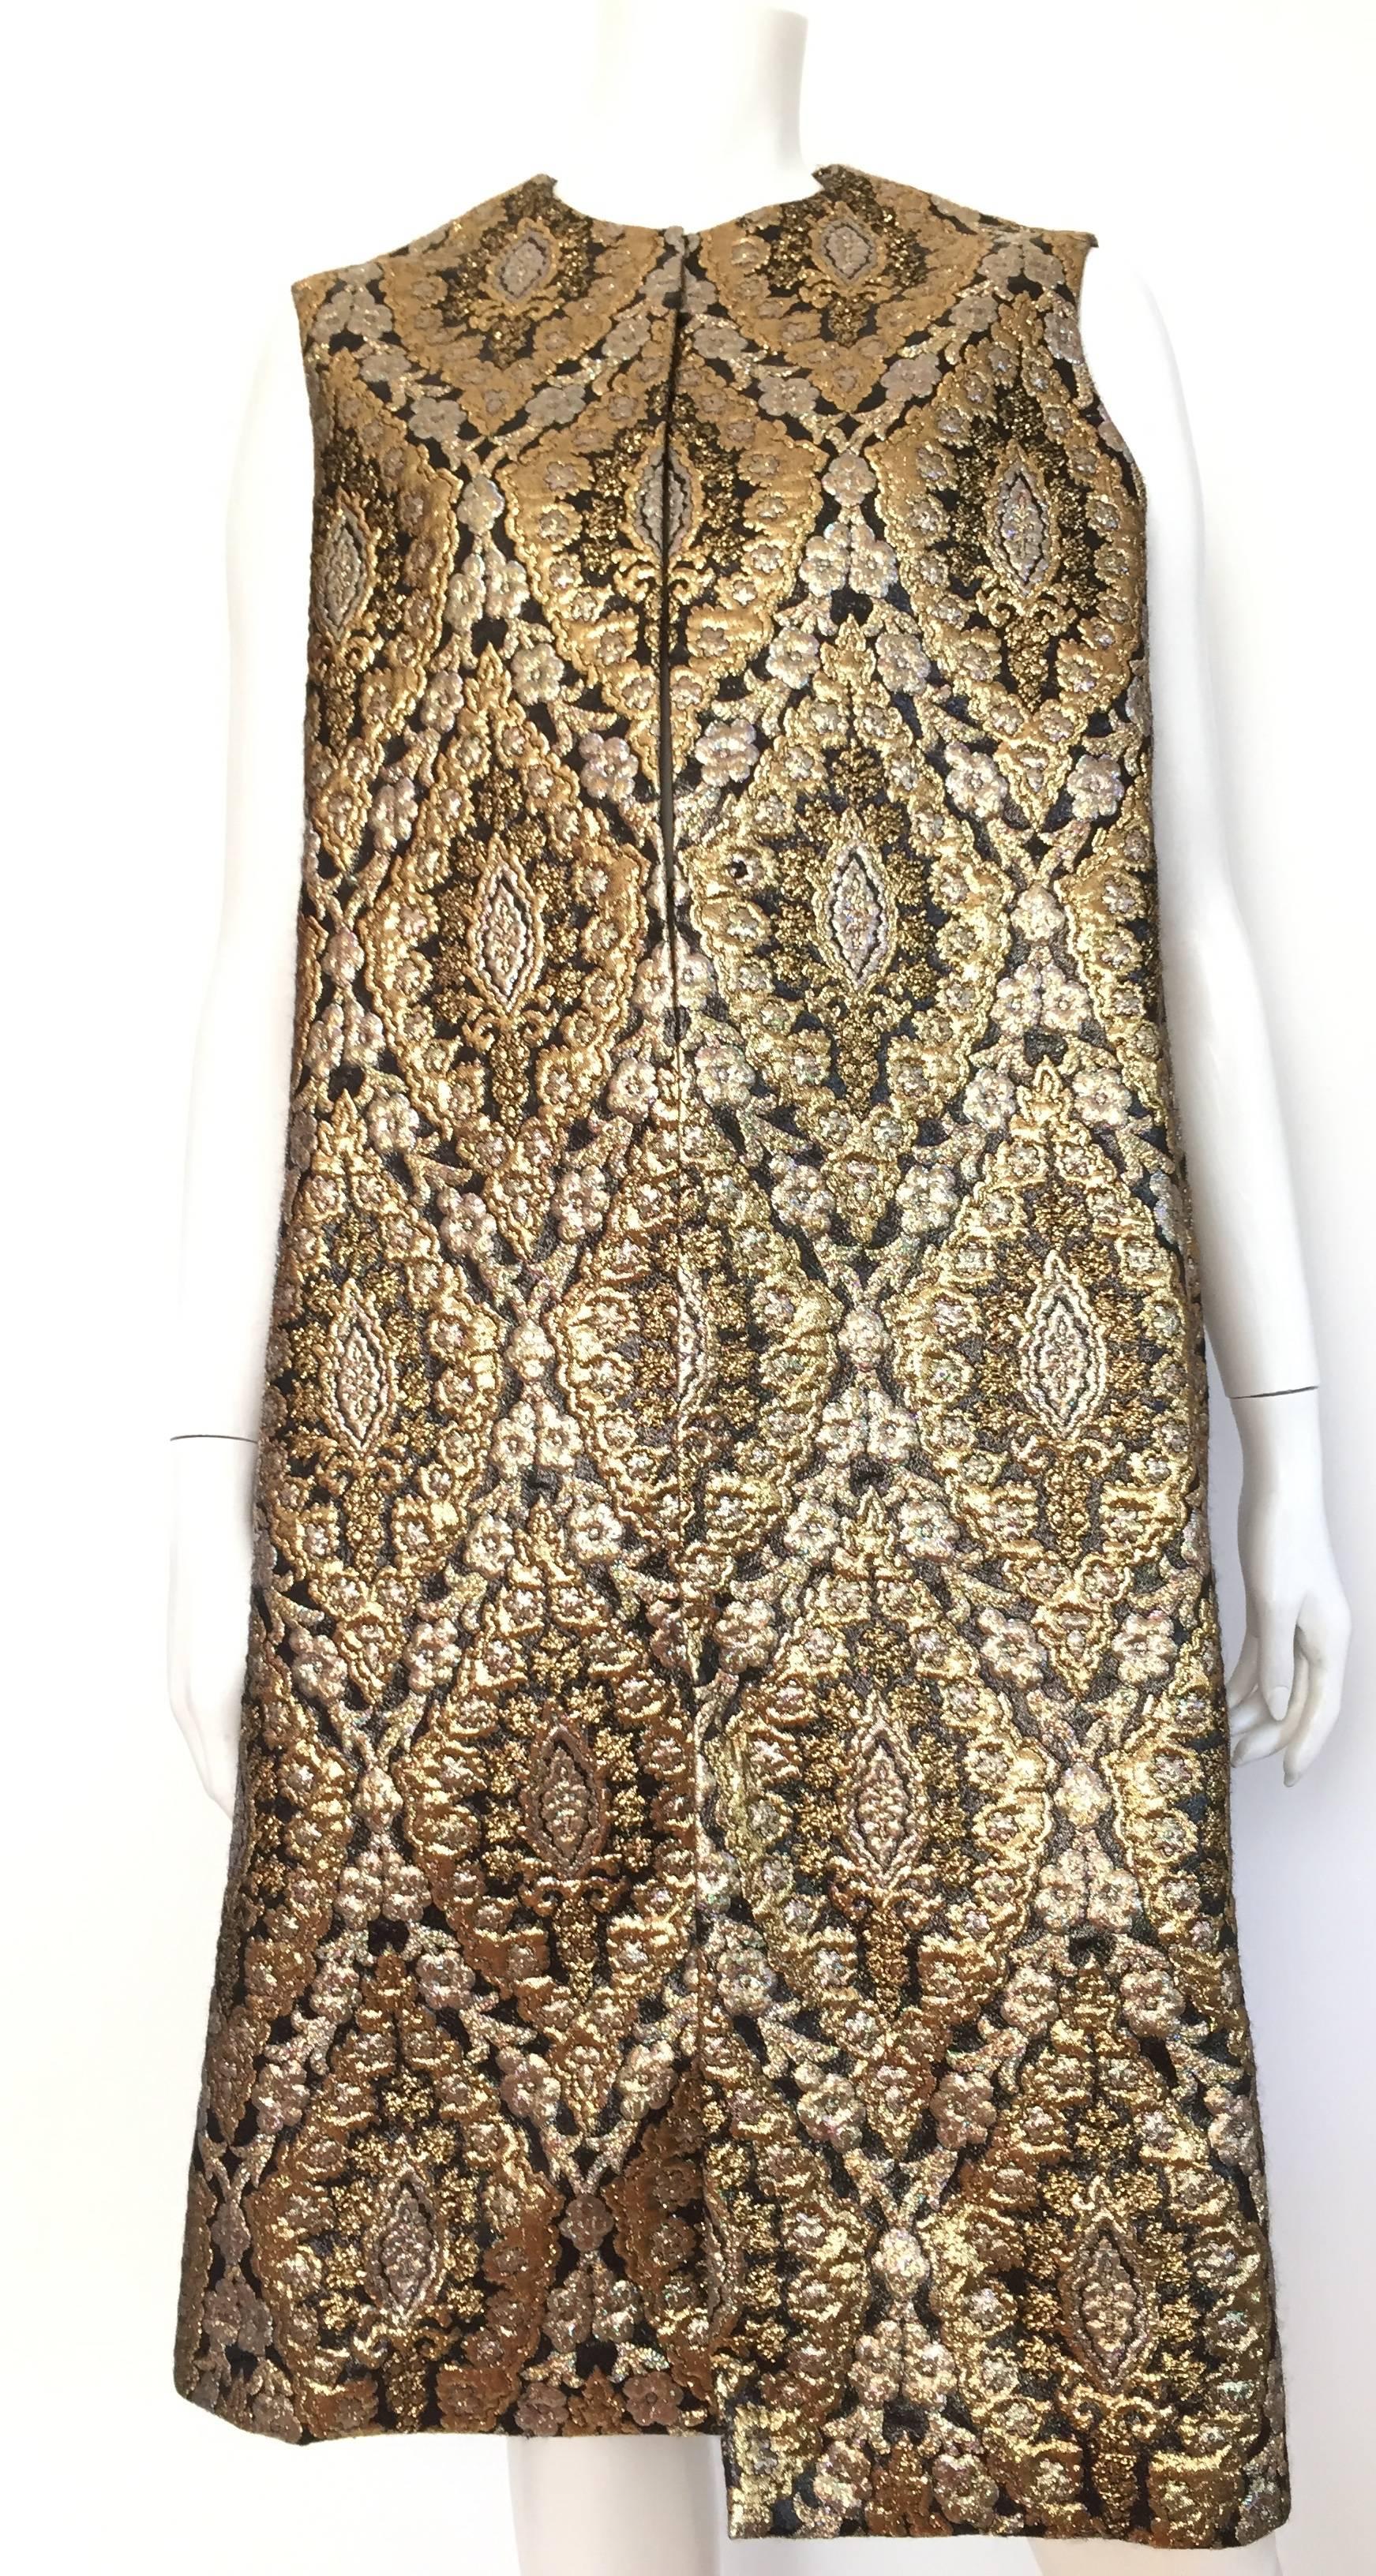 Women's Richard Tam 1961 Silk Brocade Evening Dress & Coat Size 12 / 14.